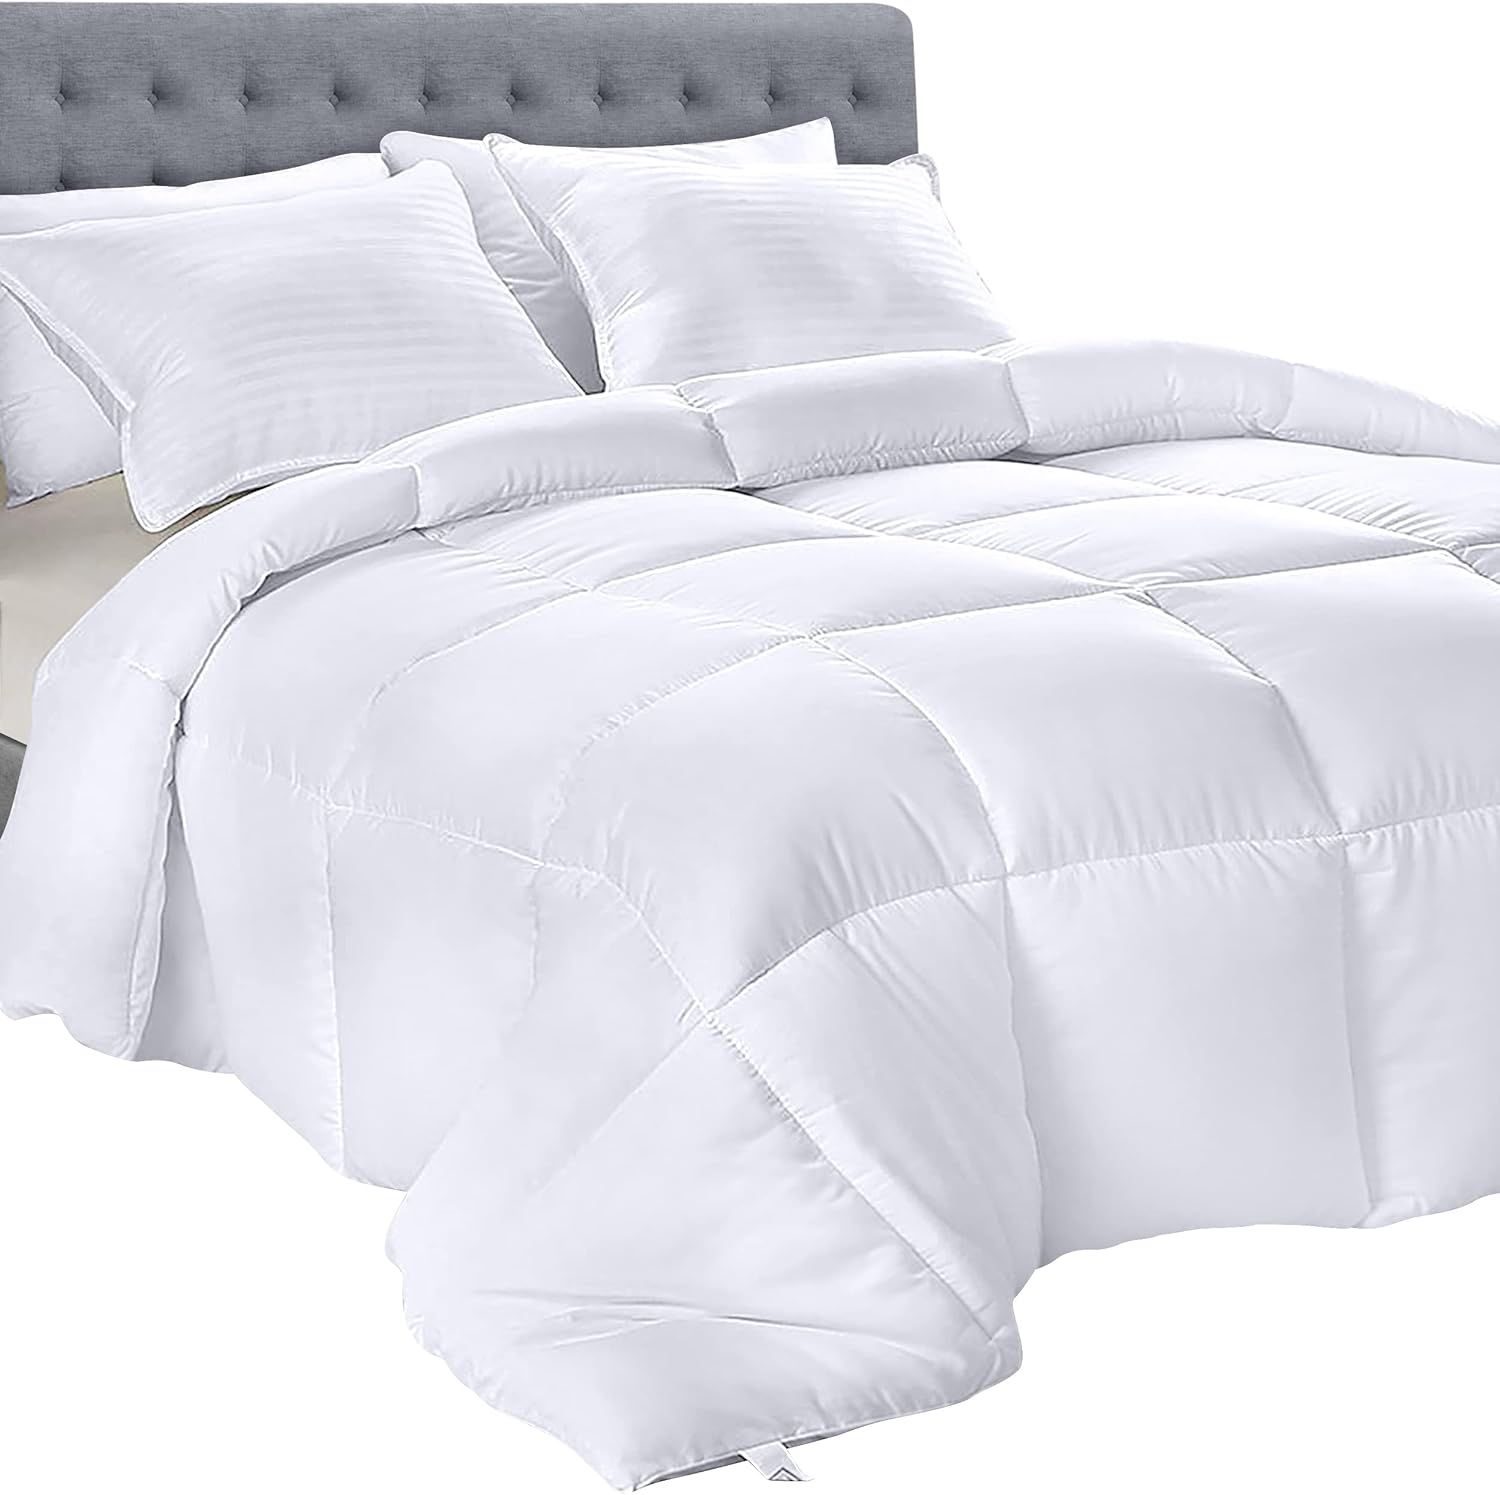 Utopia Bedding - All Season Comforters - Microfiber Bedding - Plush Siliconized Fiberfill - White... | Amazon (US)